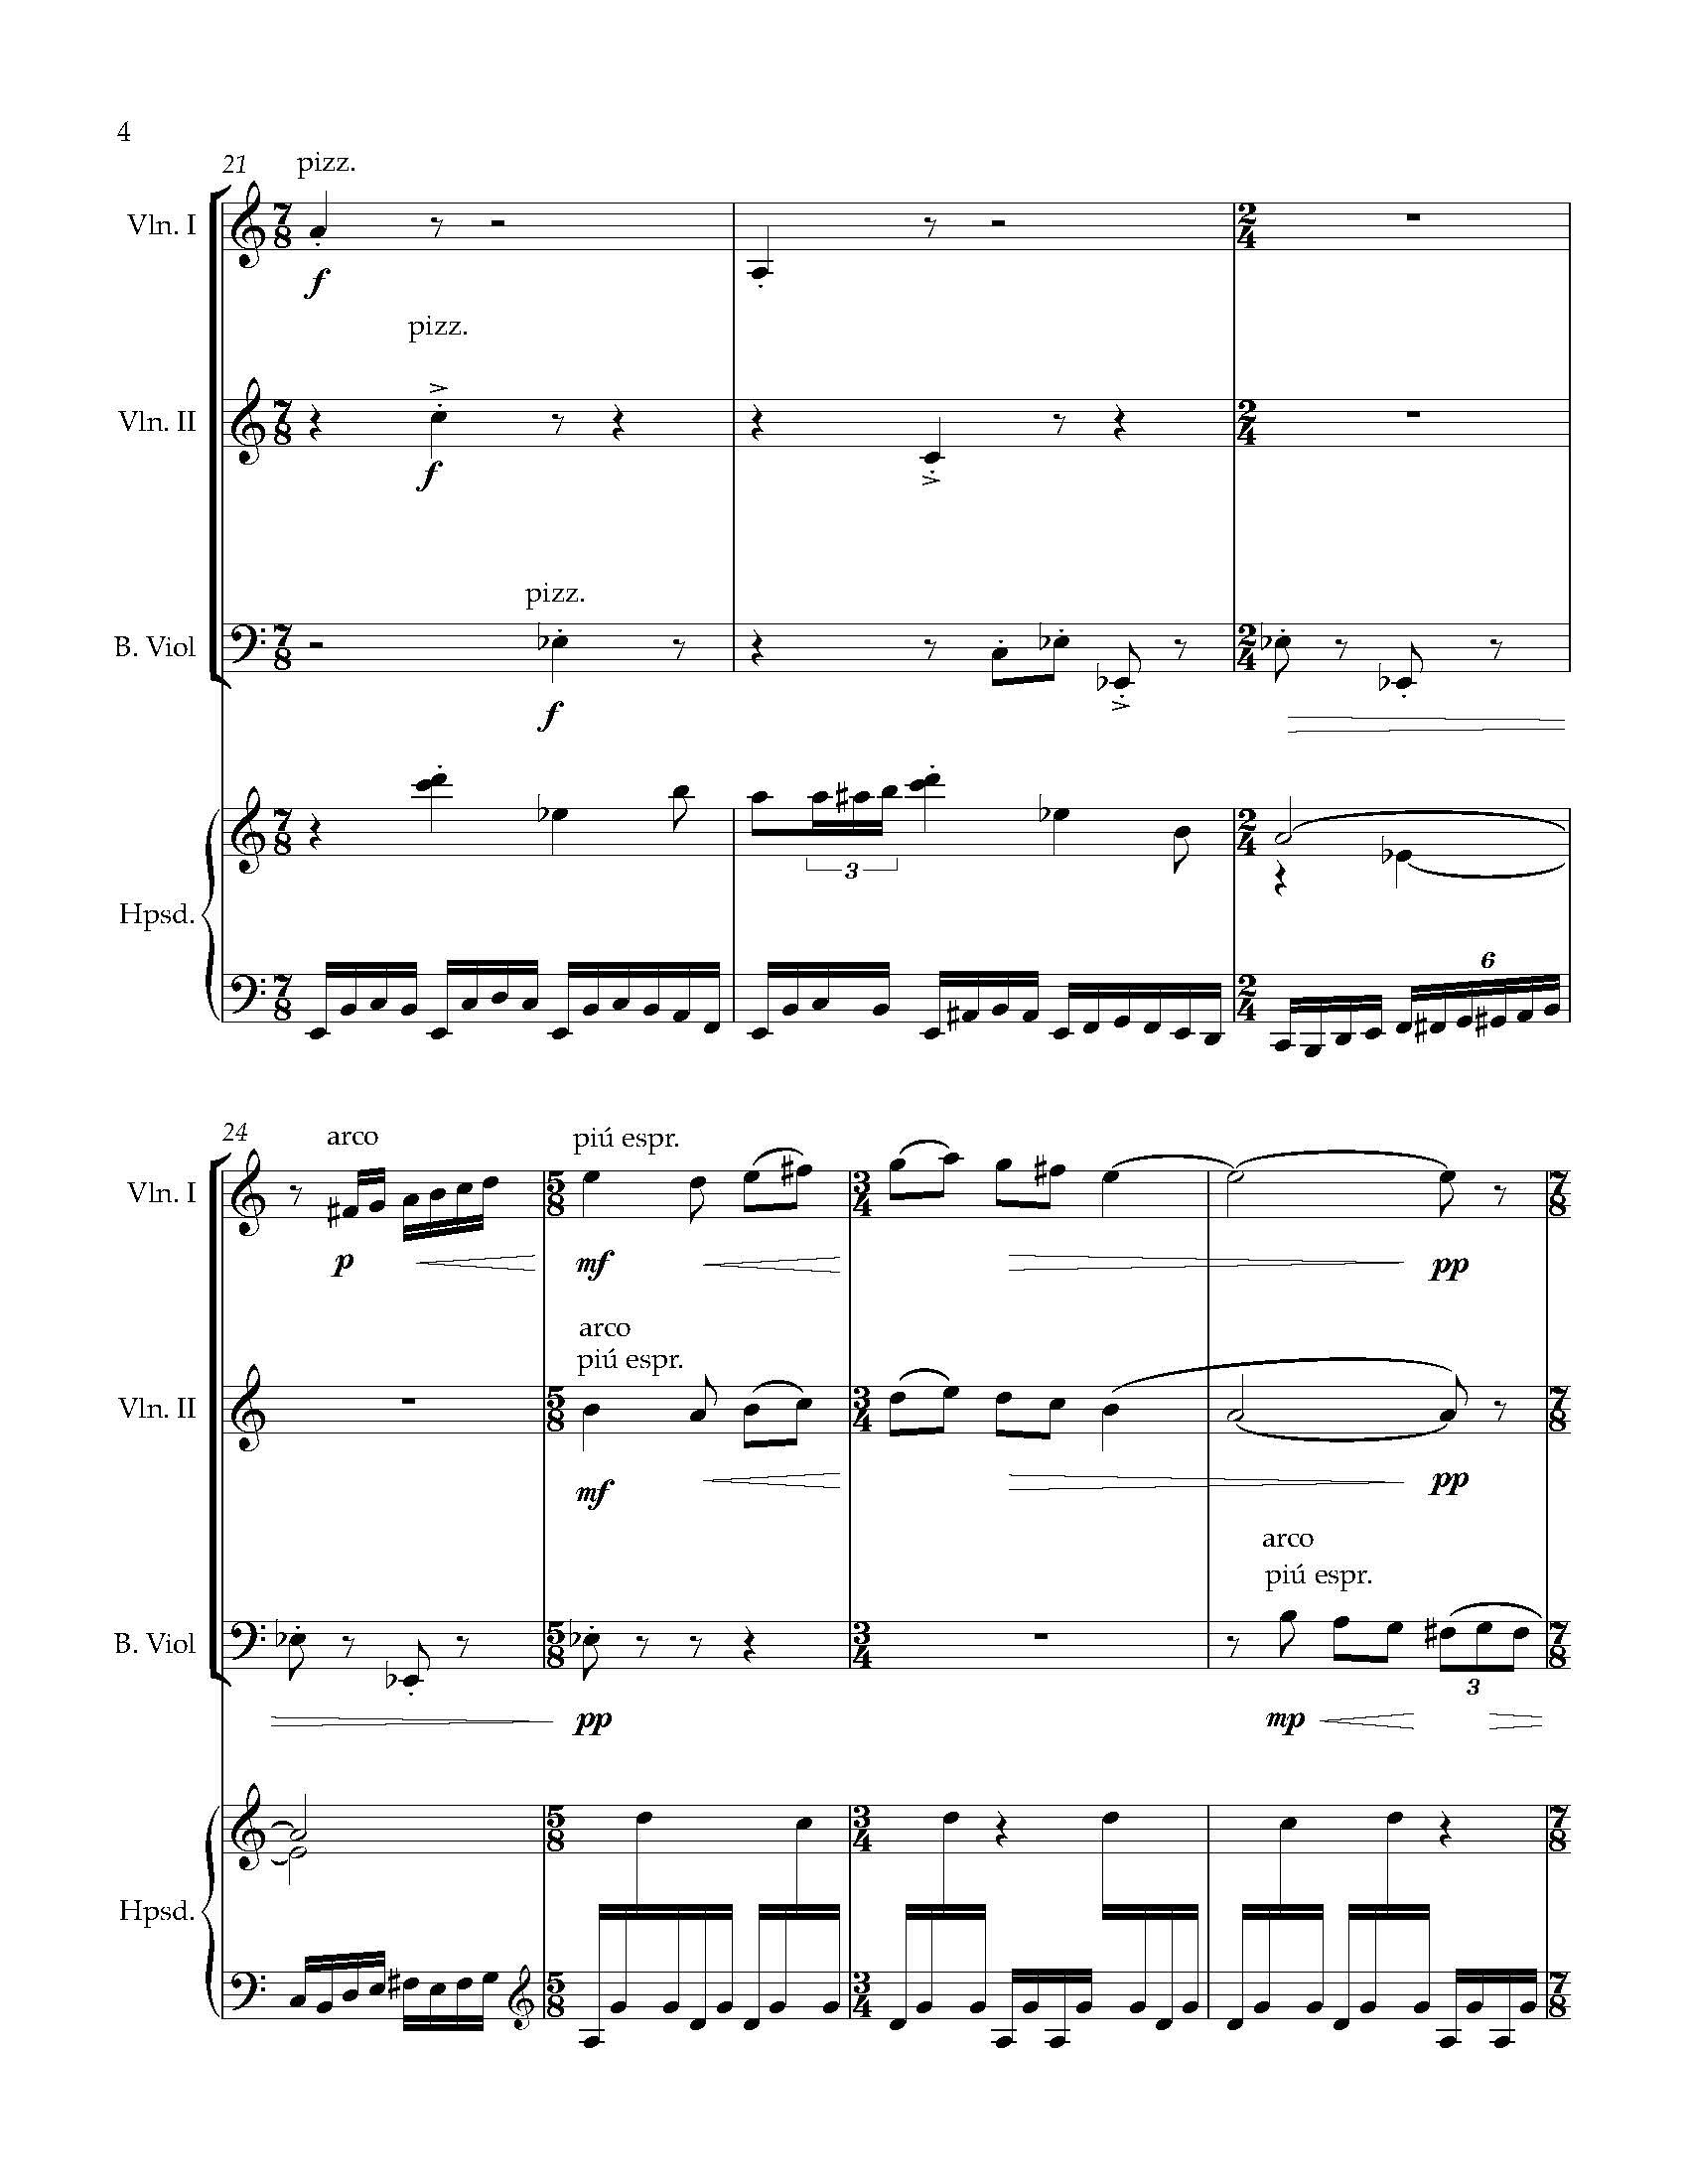 Sonata Sonare - Complete Score_Page_10.jpg